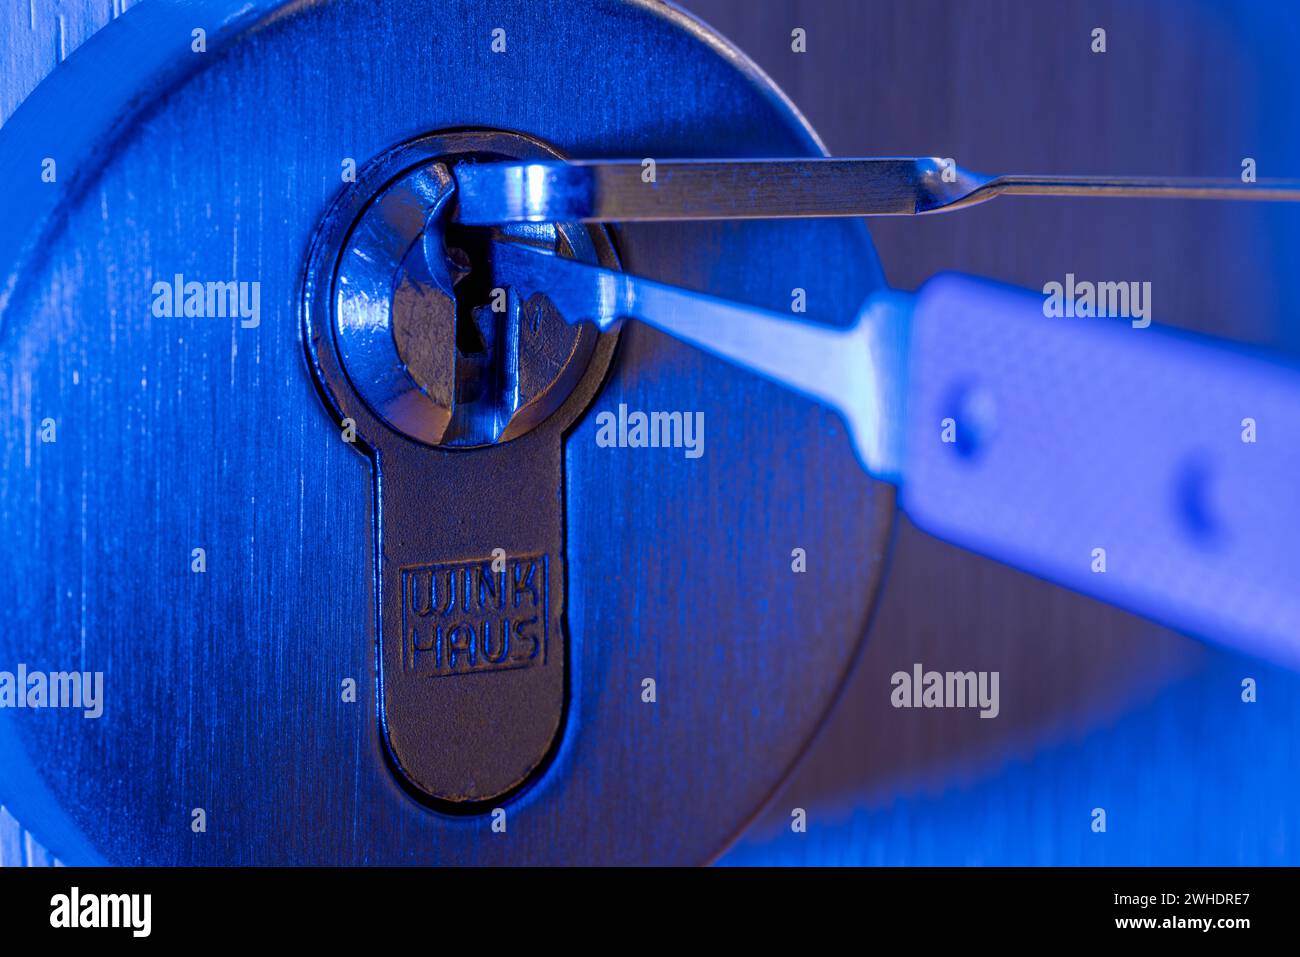 Il ladro apre la serratura a cilindro con lo strumento di bloccaggio, dettaglio, luce blu, immagine simbolica, furto domestico, Foto Stock